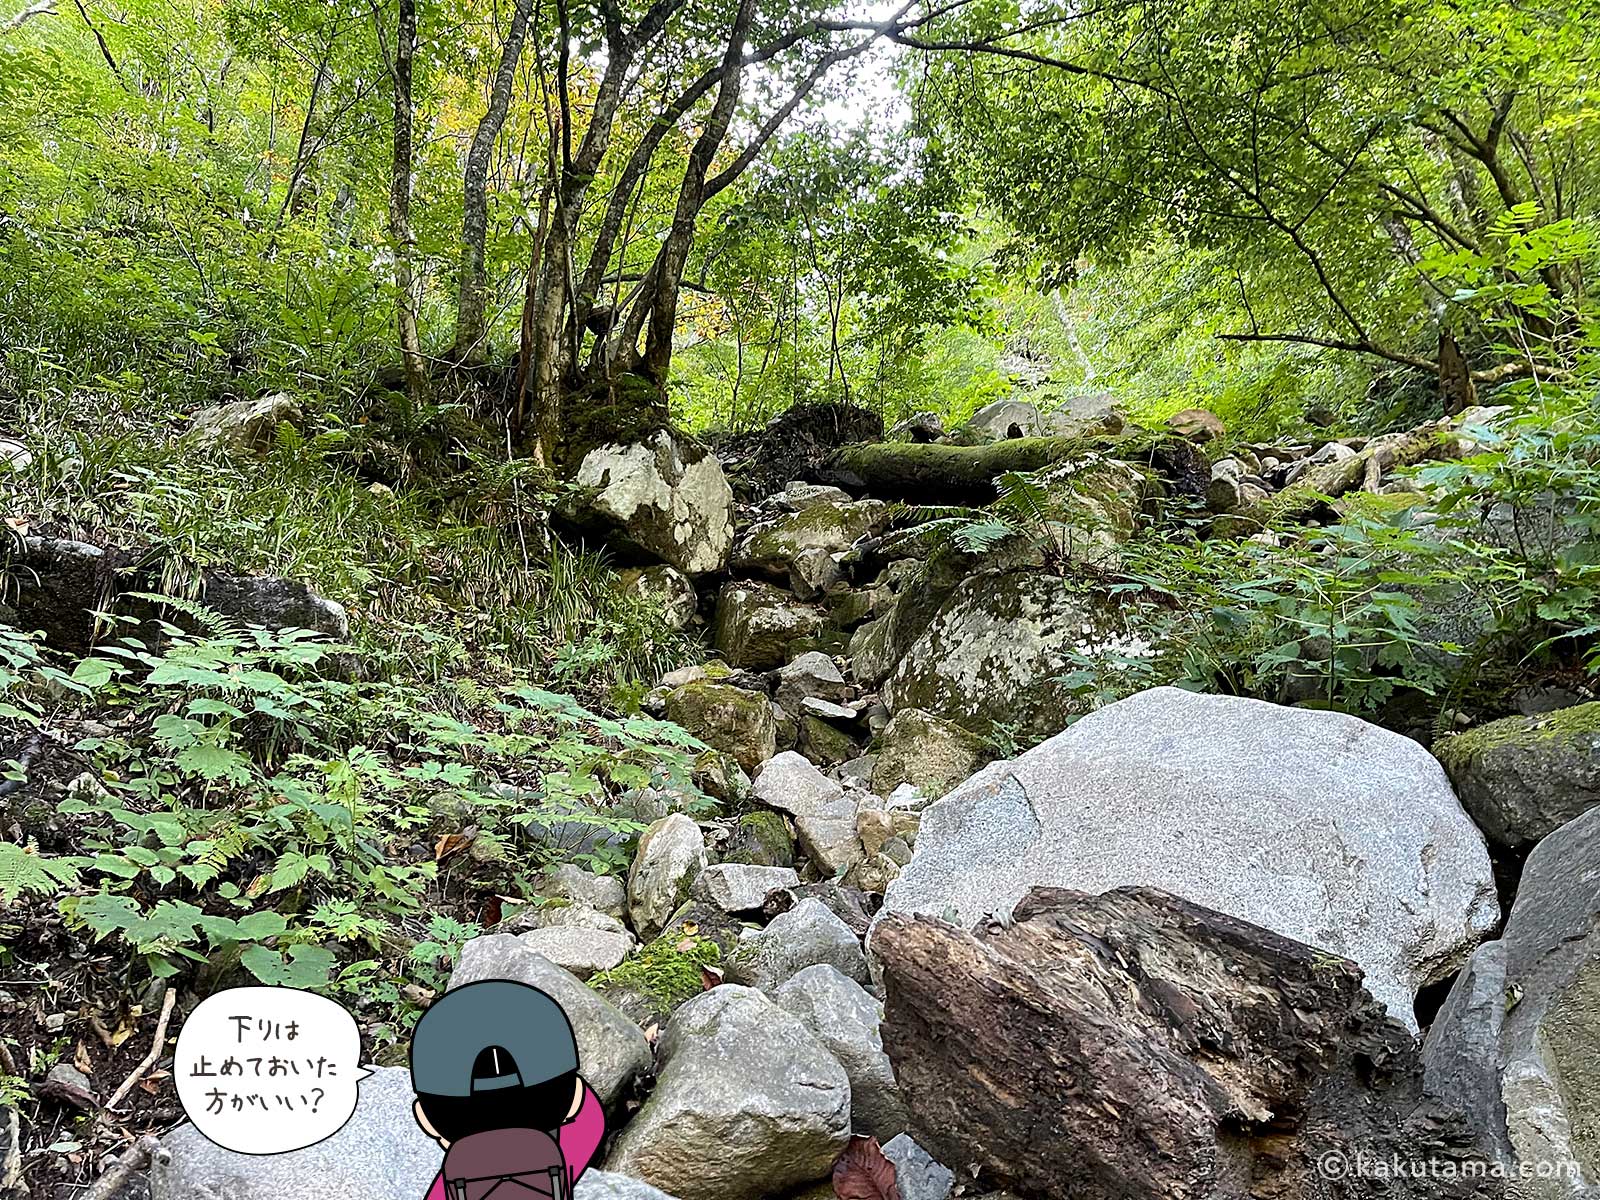 穂高平近道の岩場の写真と登山者のイラスト